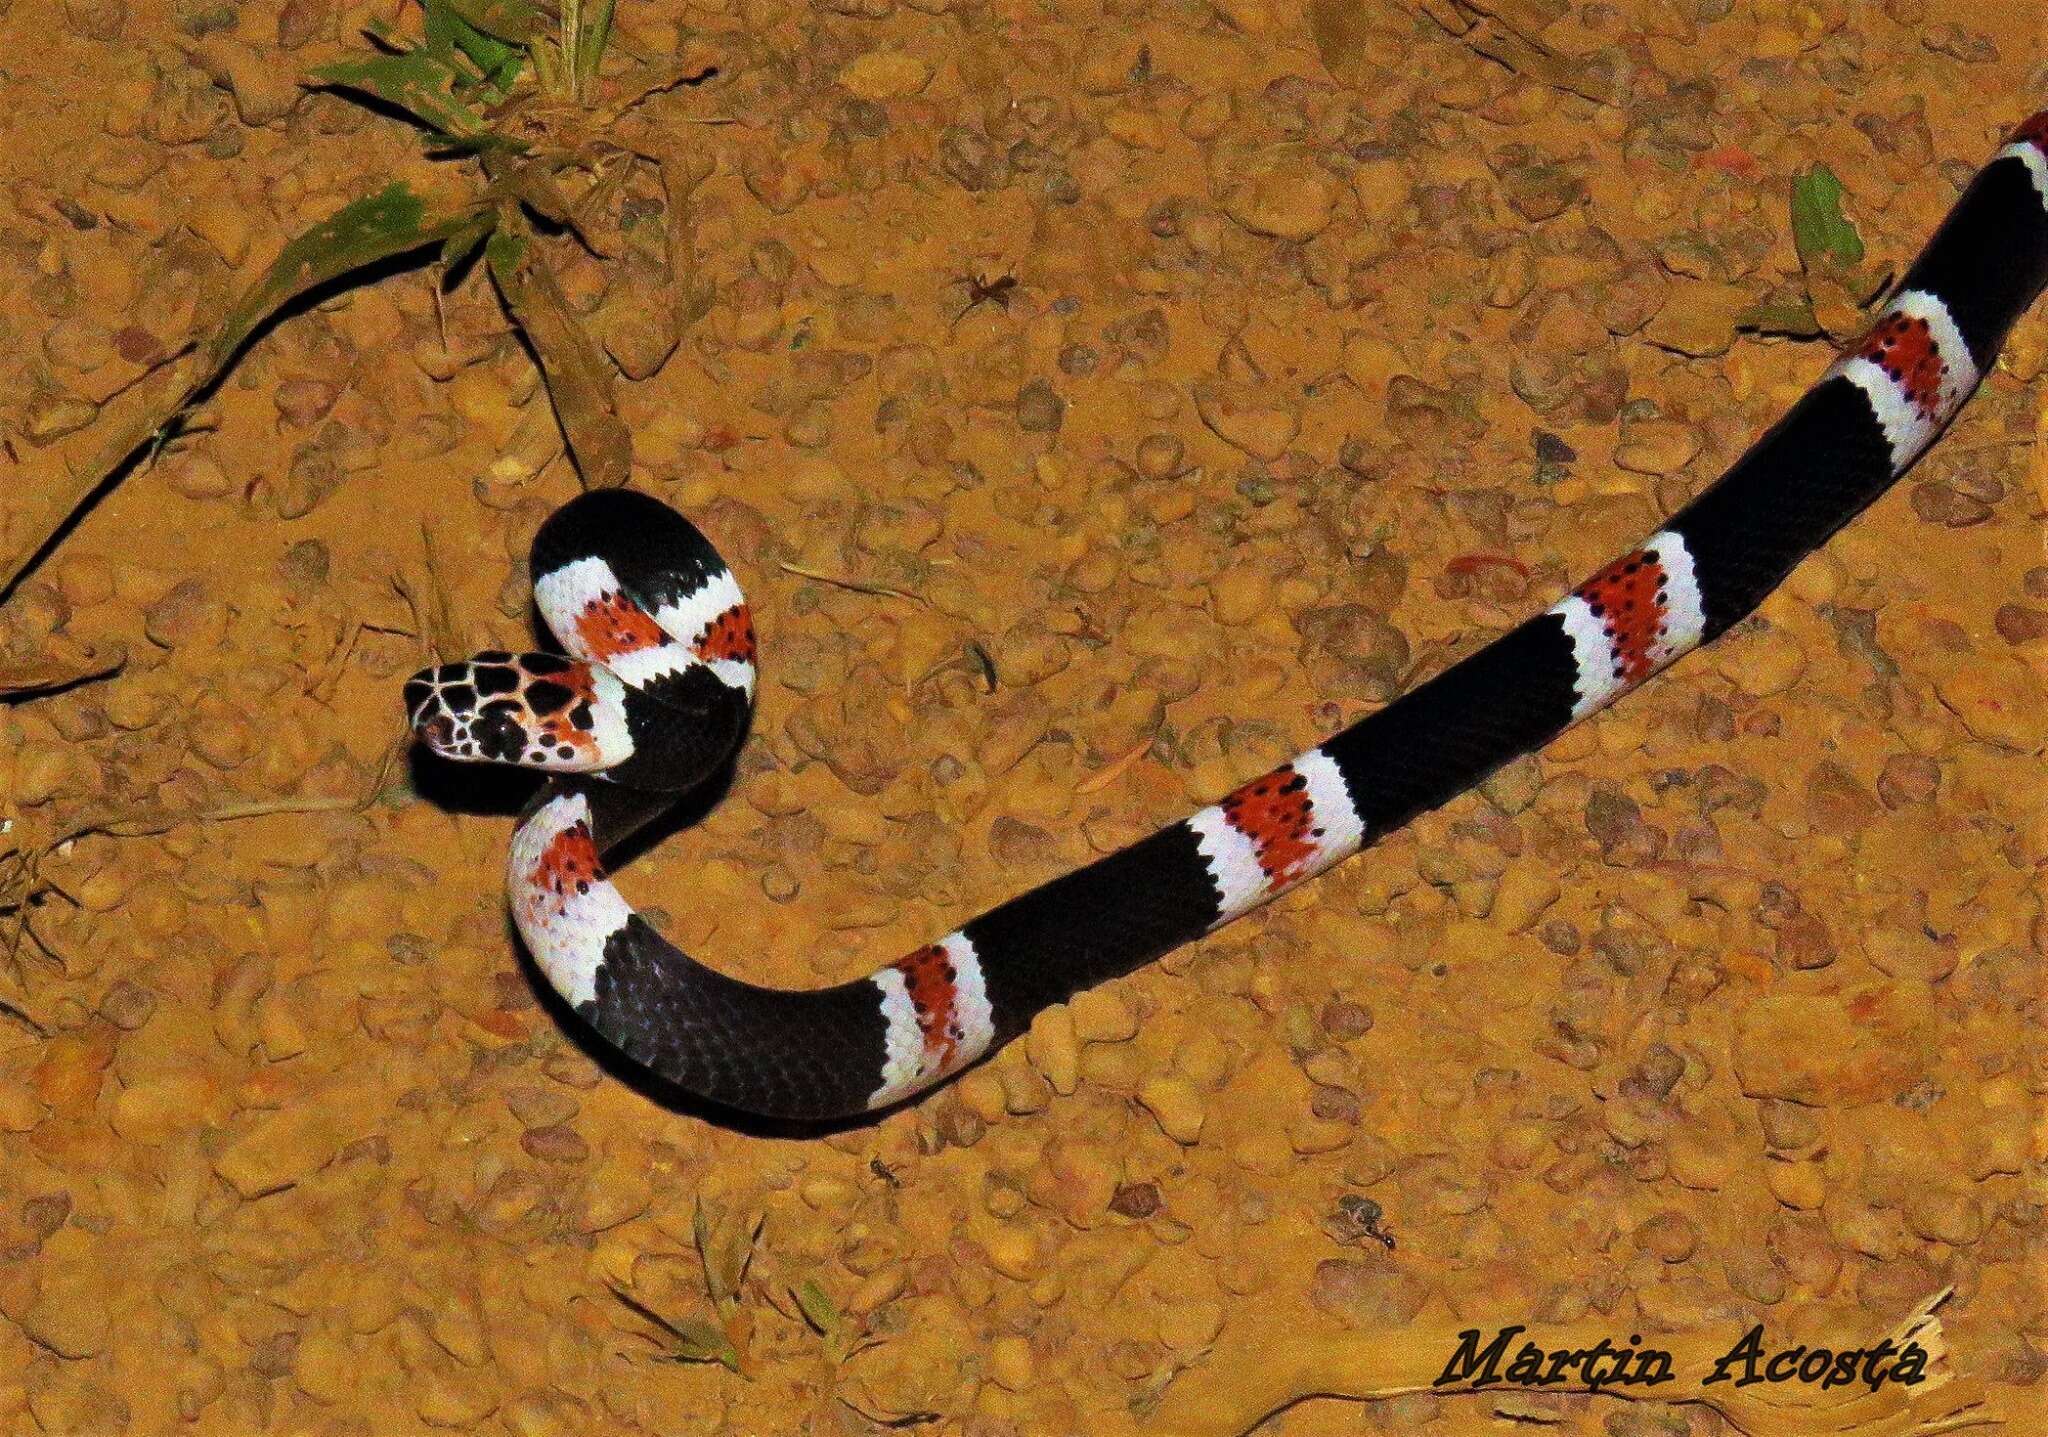 Image of Amazon Banded Snake